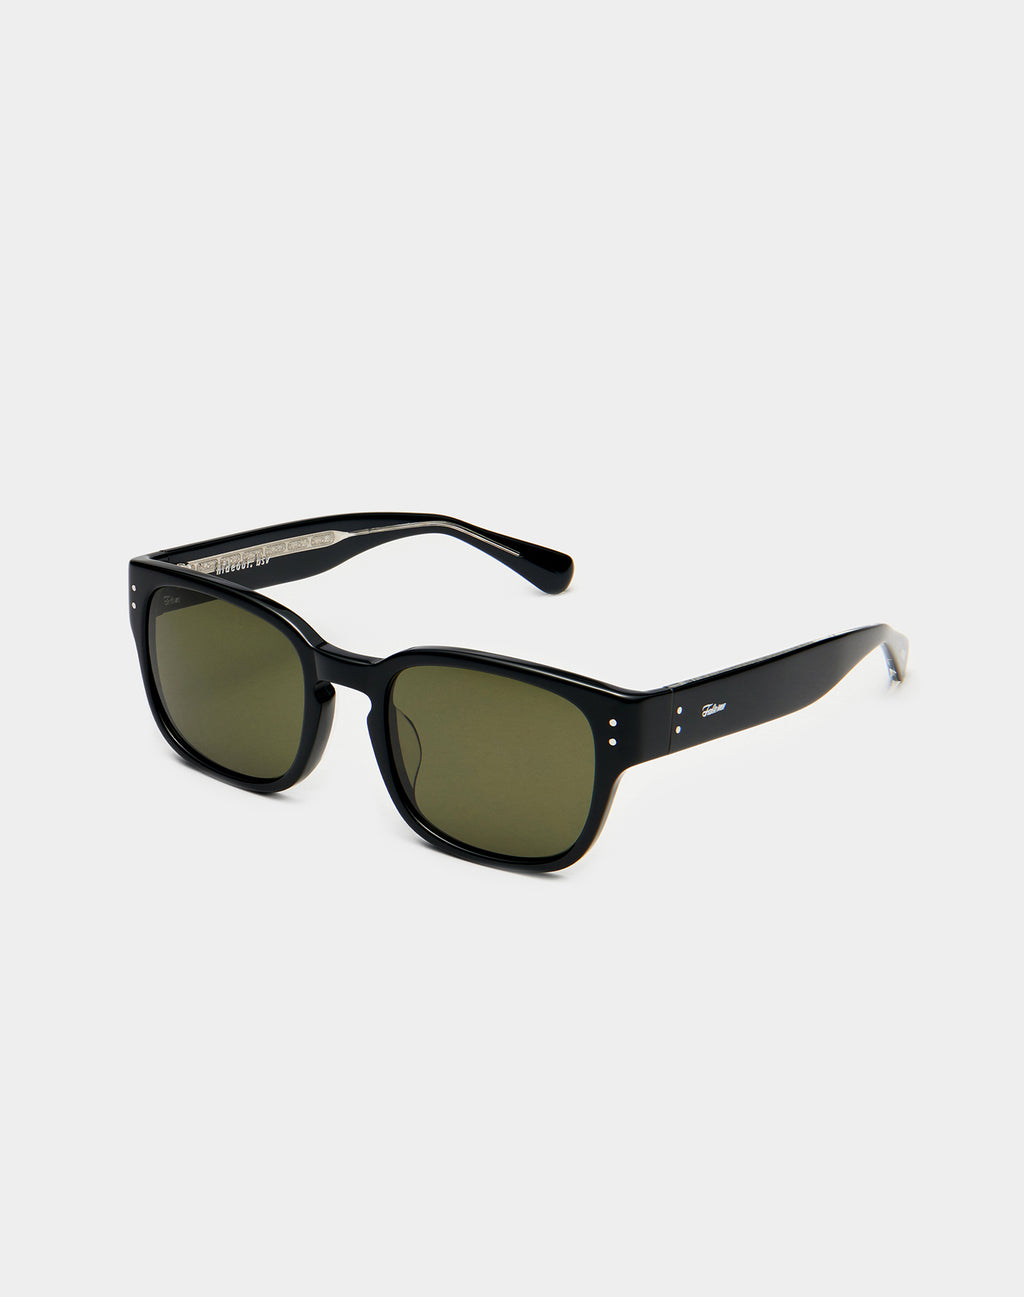 ハイドアウトサングラス / [FAKEME] HIDEOUT sunglasses – 60